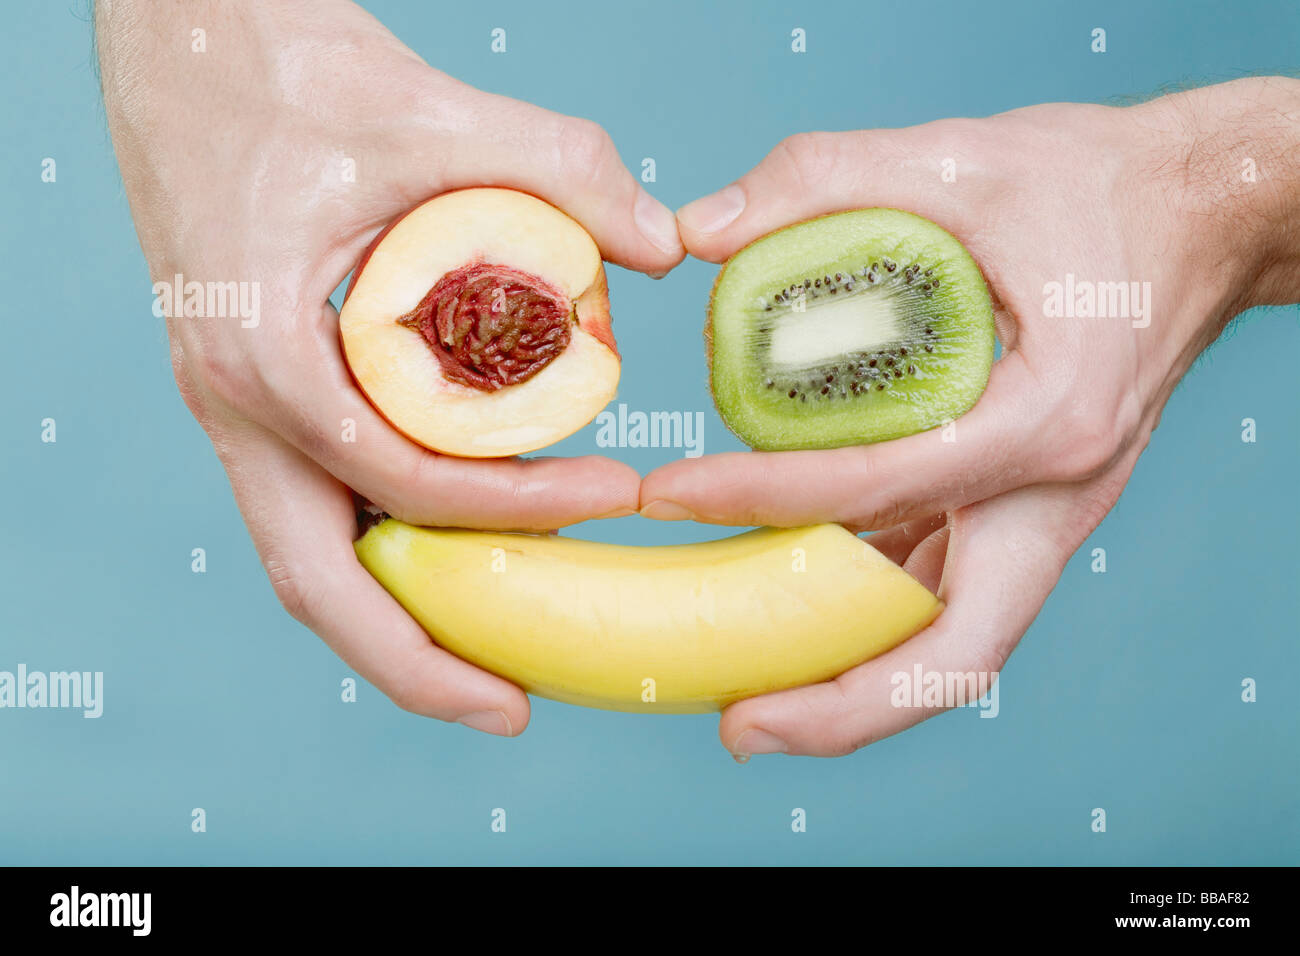 Les mains tenant des fruits dans un arrangement qui ressemble à un visage Banque D'Images